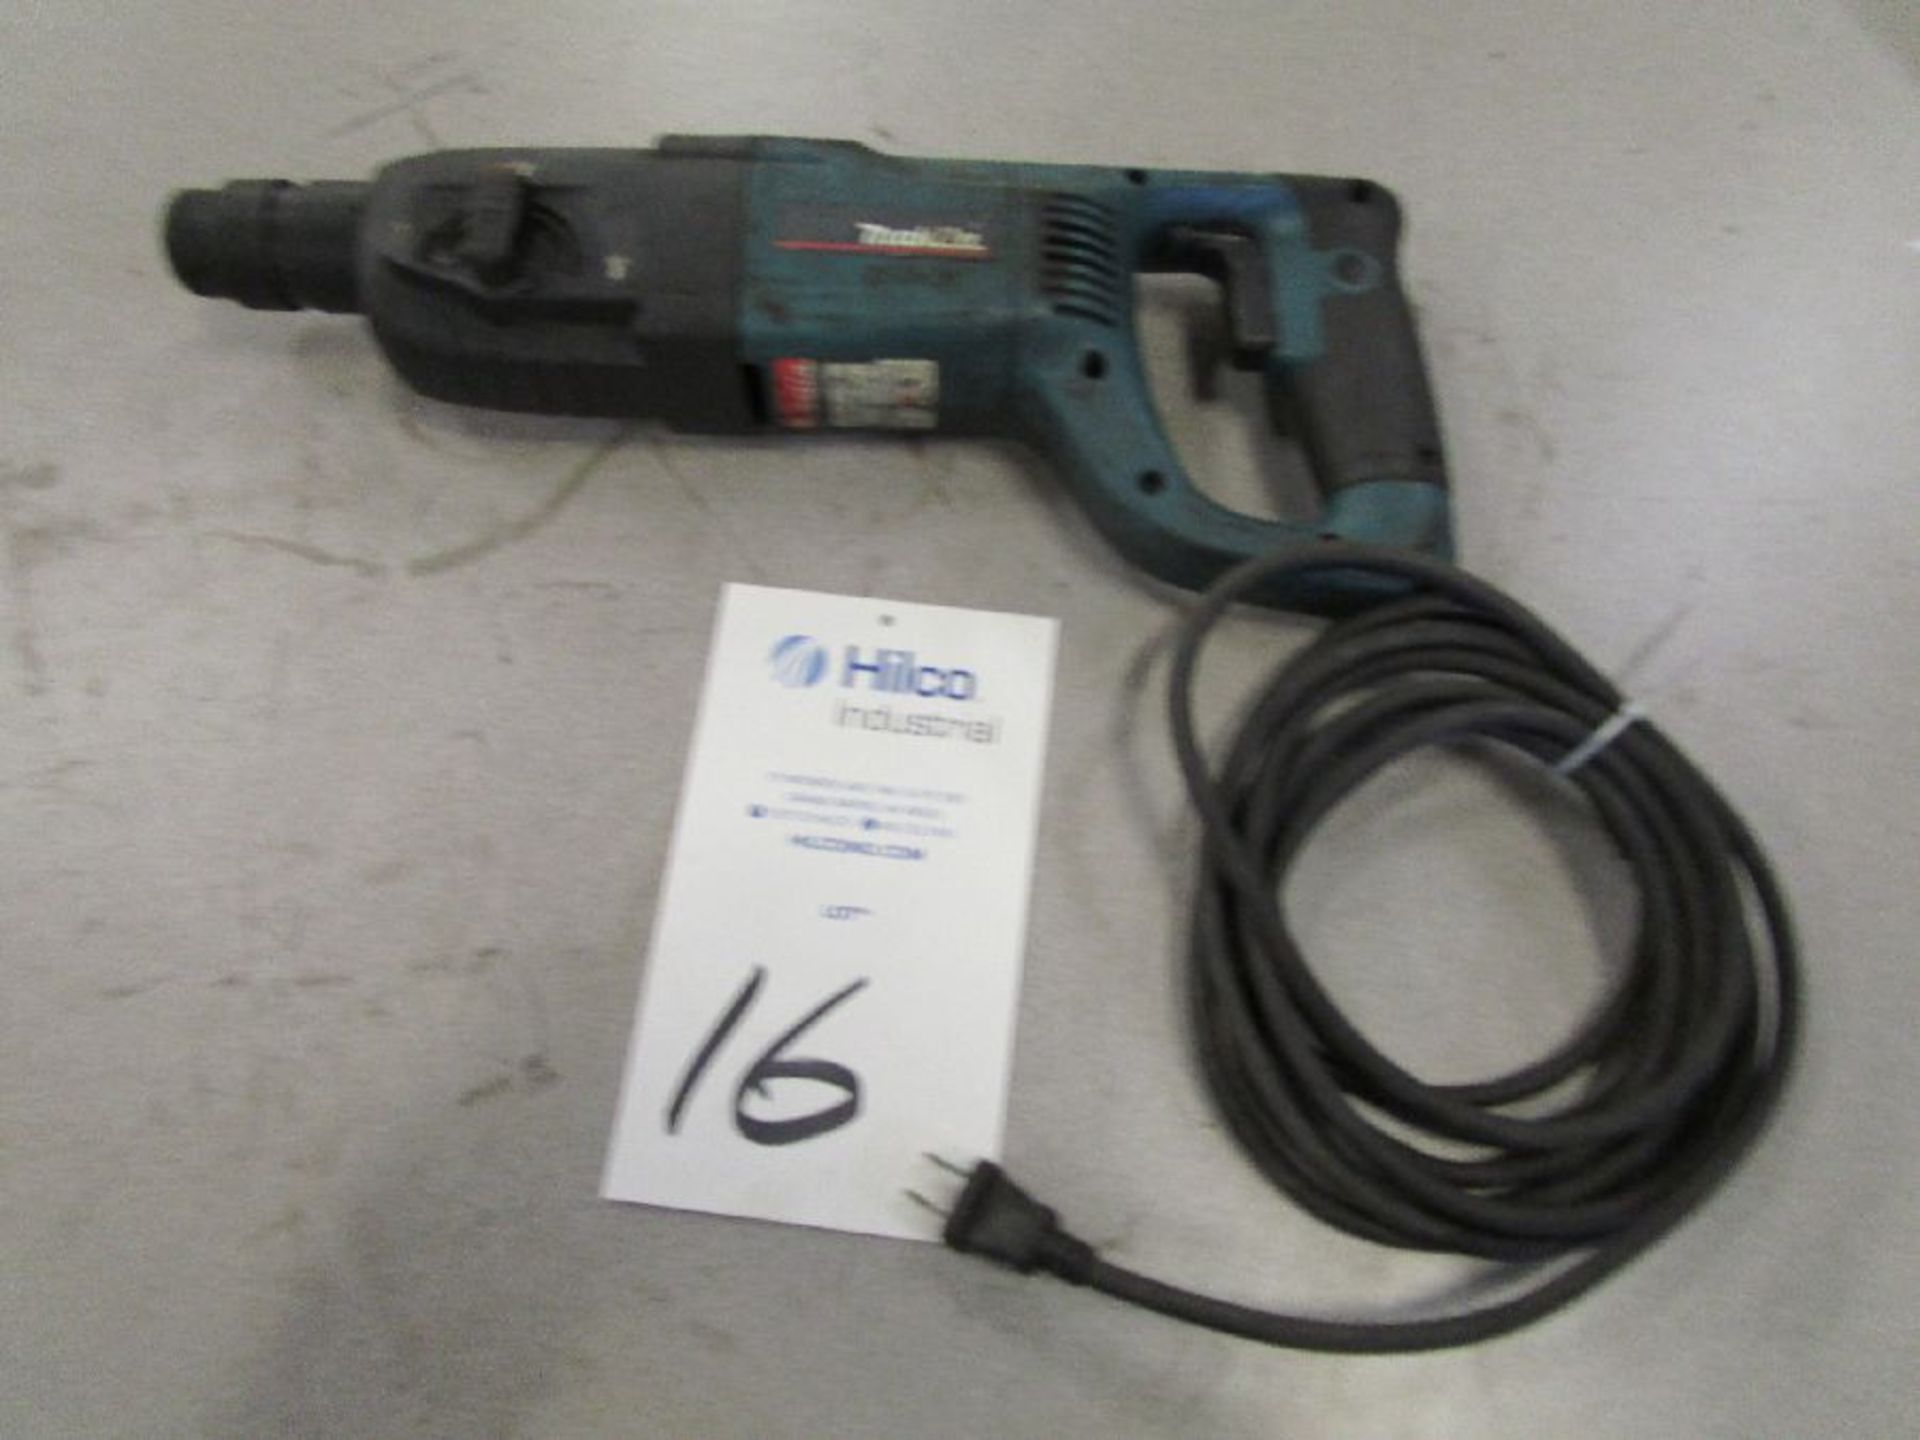 Makita Model HR2455 Rotary Hammer Drill